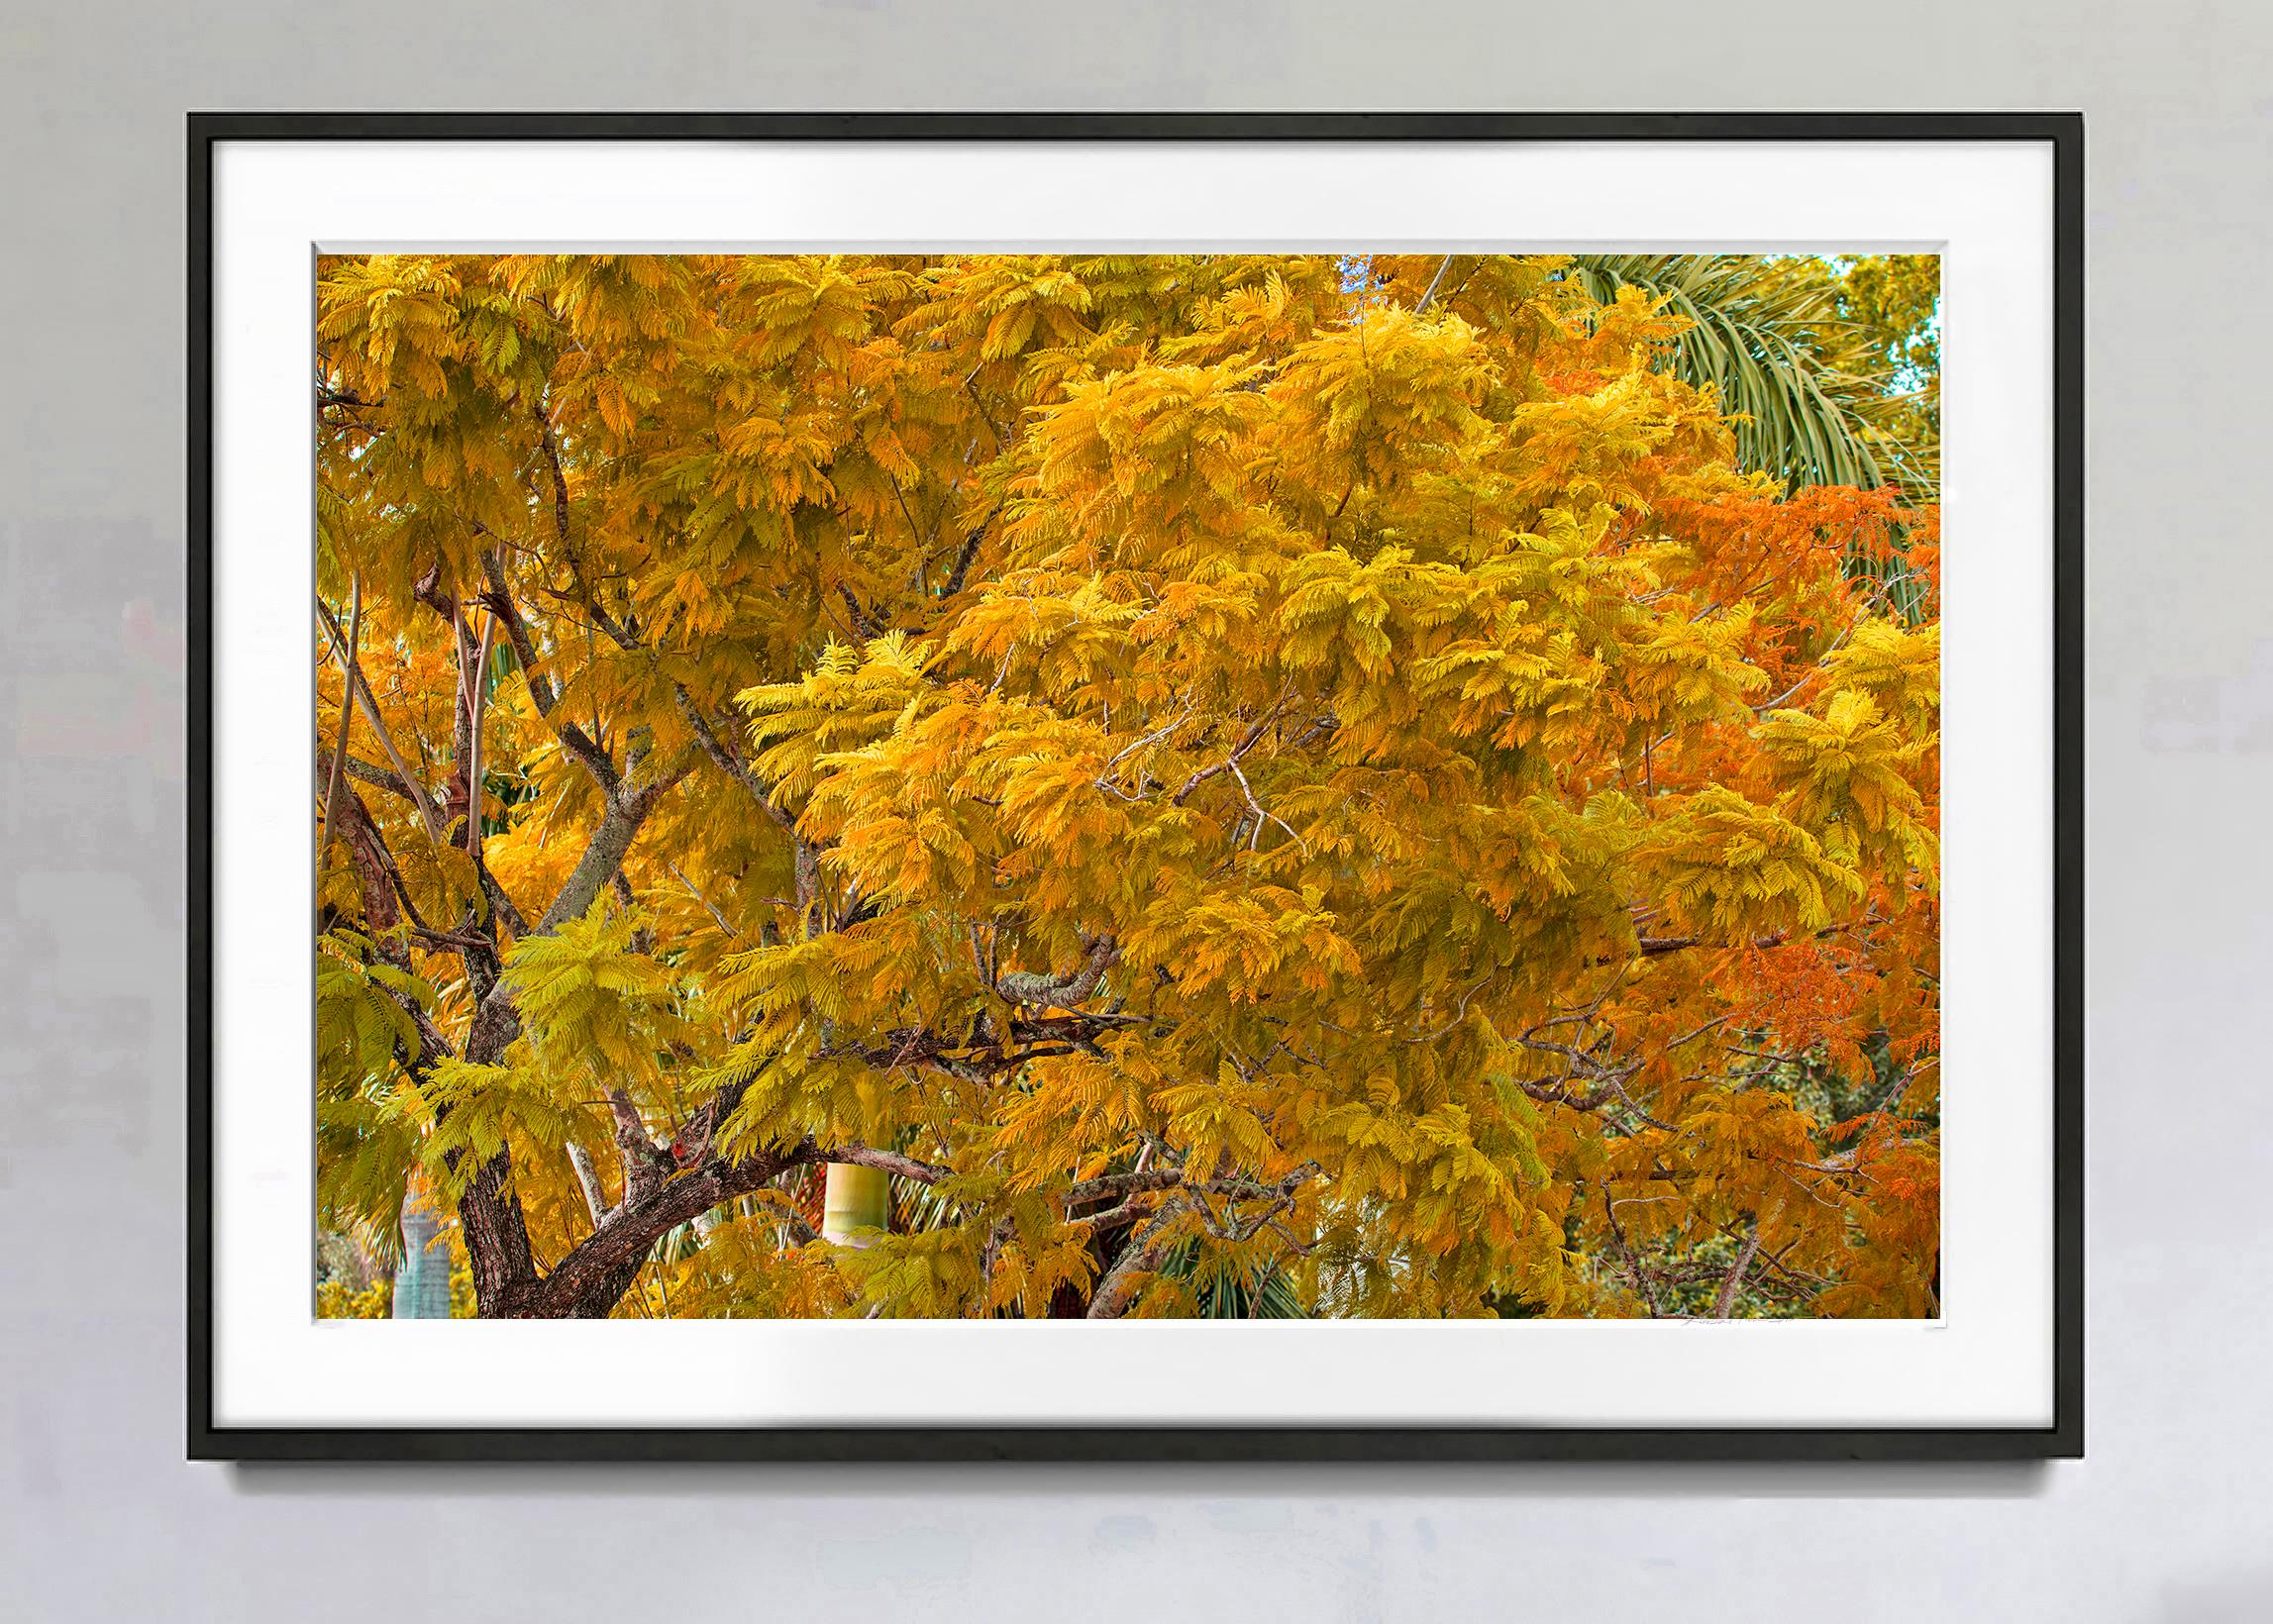 Herbstfarbe. Herbstlaub, Bäume in  Schattierungen von Muted  Gelb und  Orange – Photograph von Robert Funk